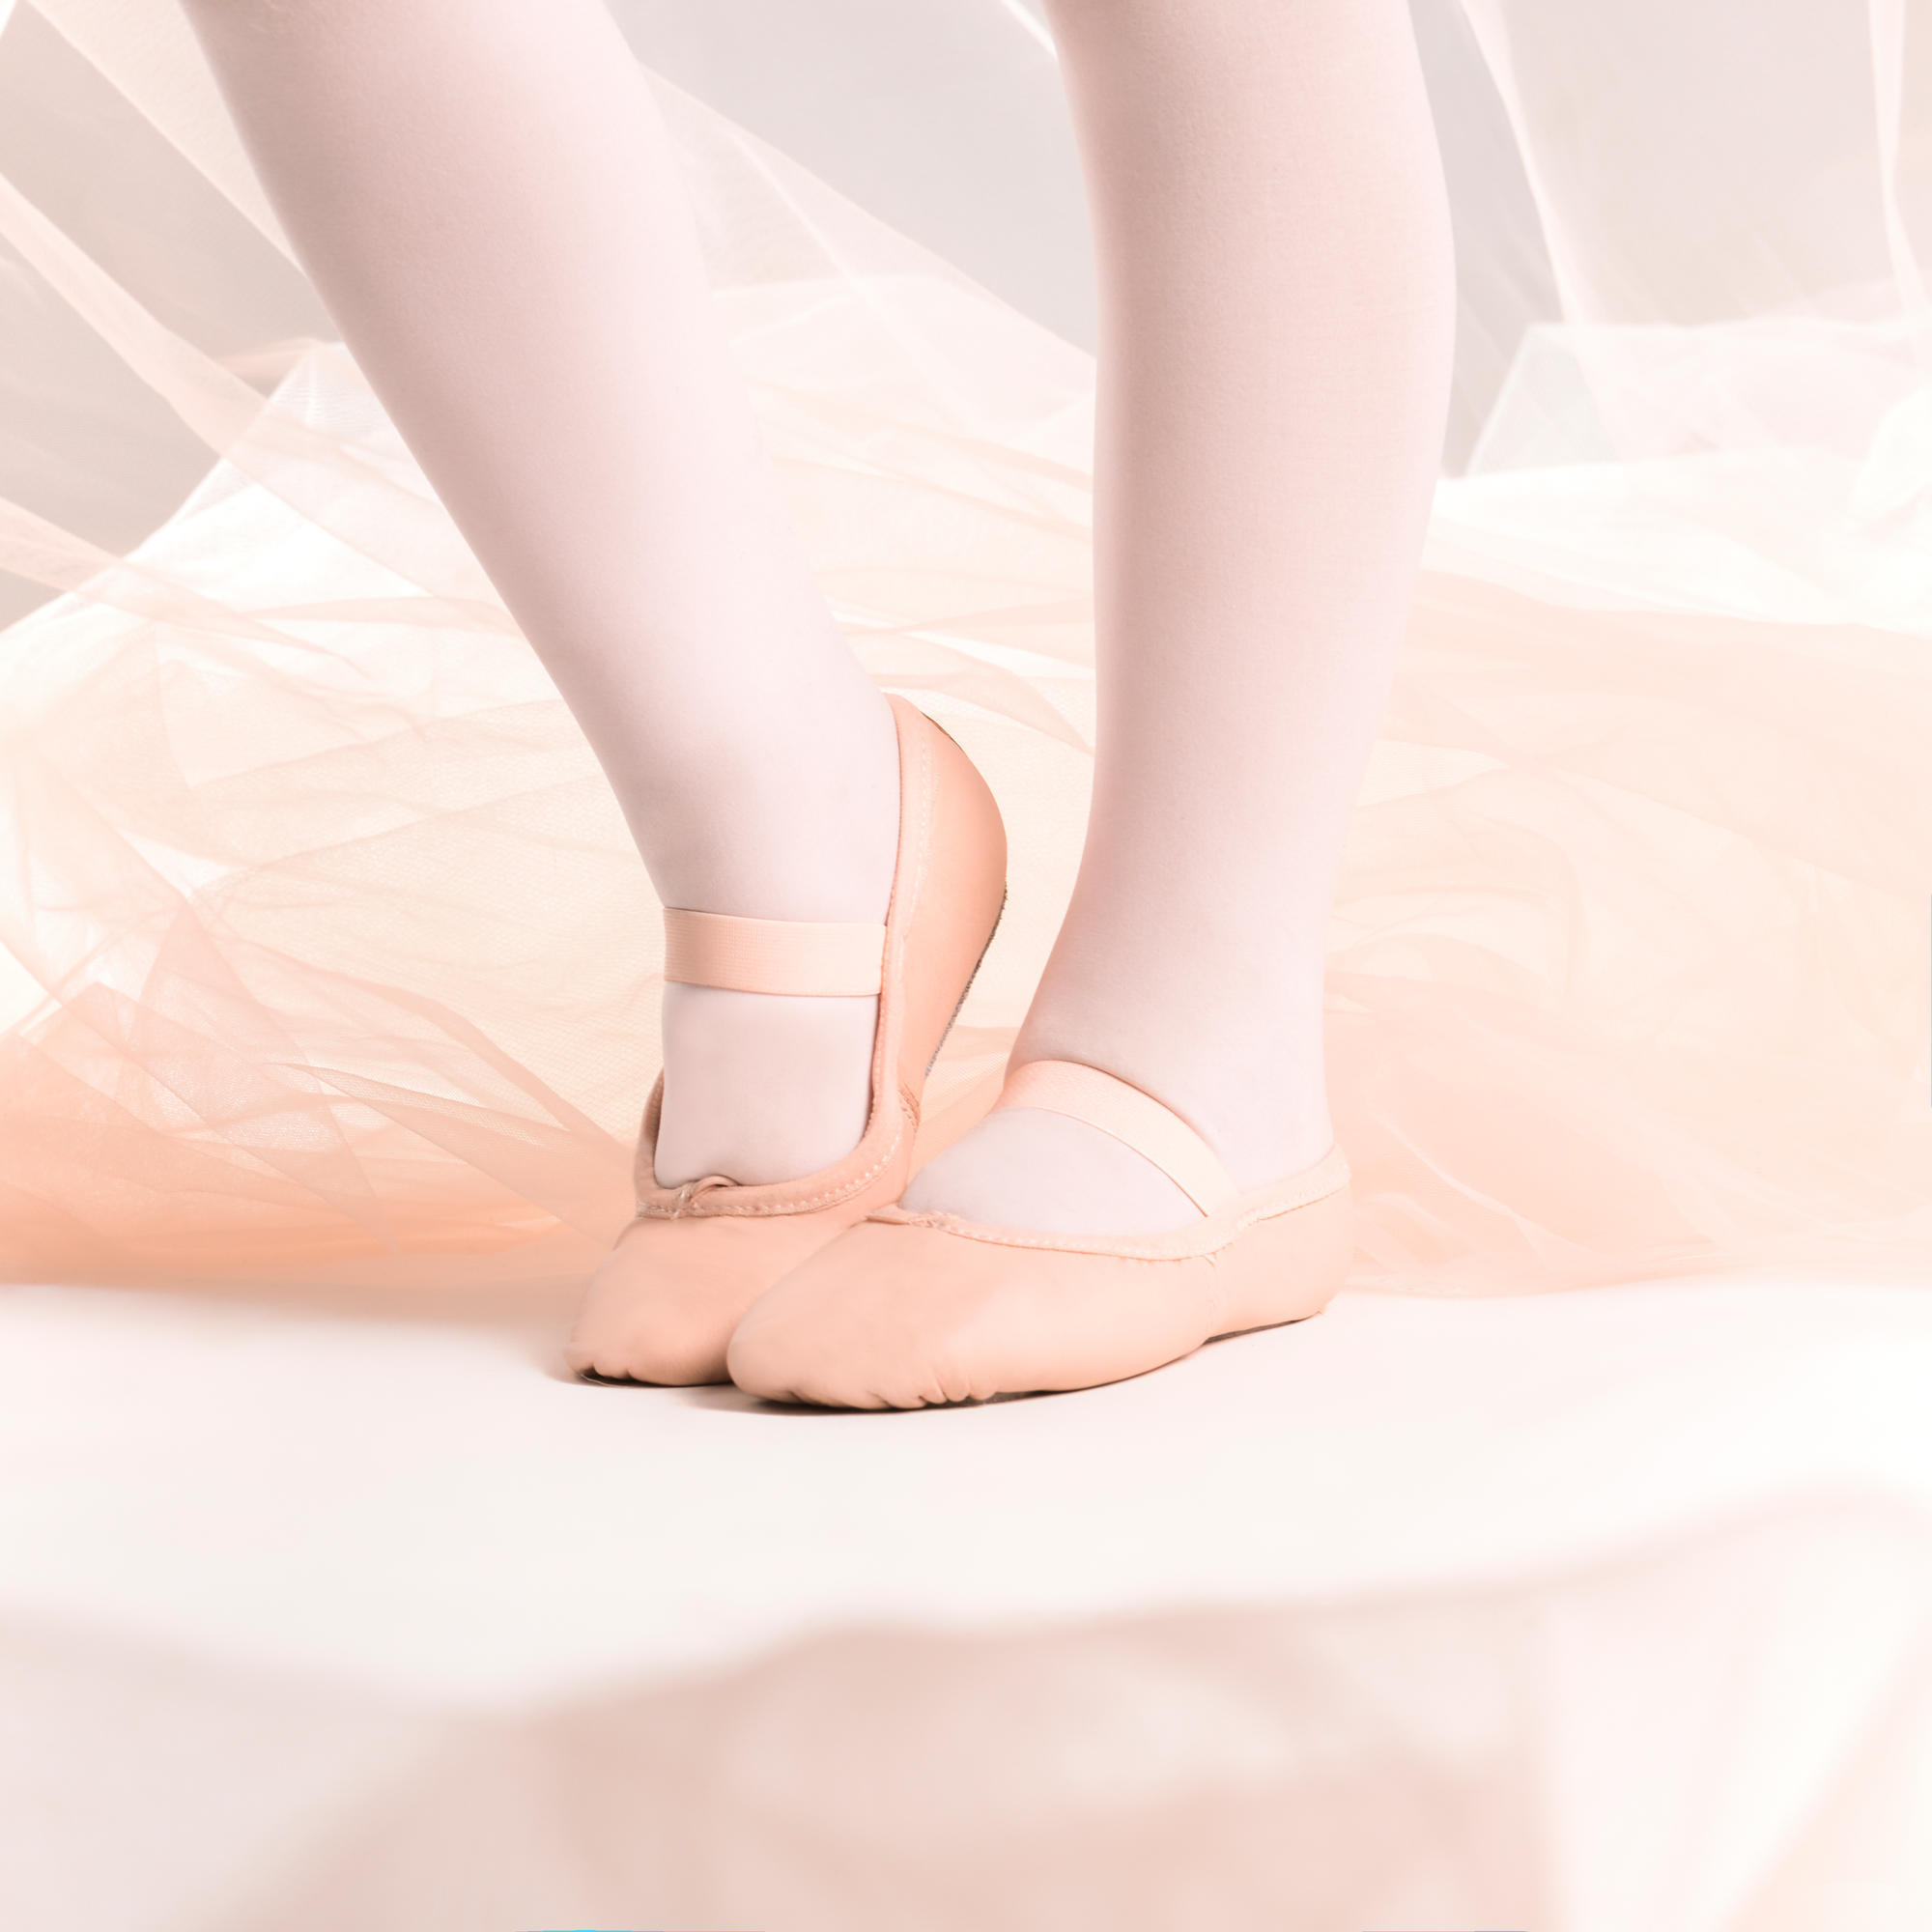 Demi-poante balet piele talpă întreagă mărimile 25-40 roz La Oferta Online decathlon imagine La Oferta Online